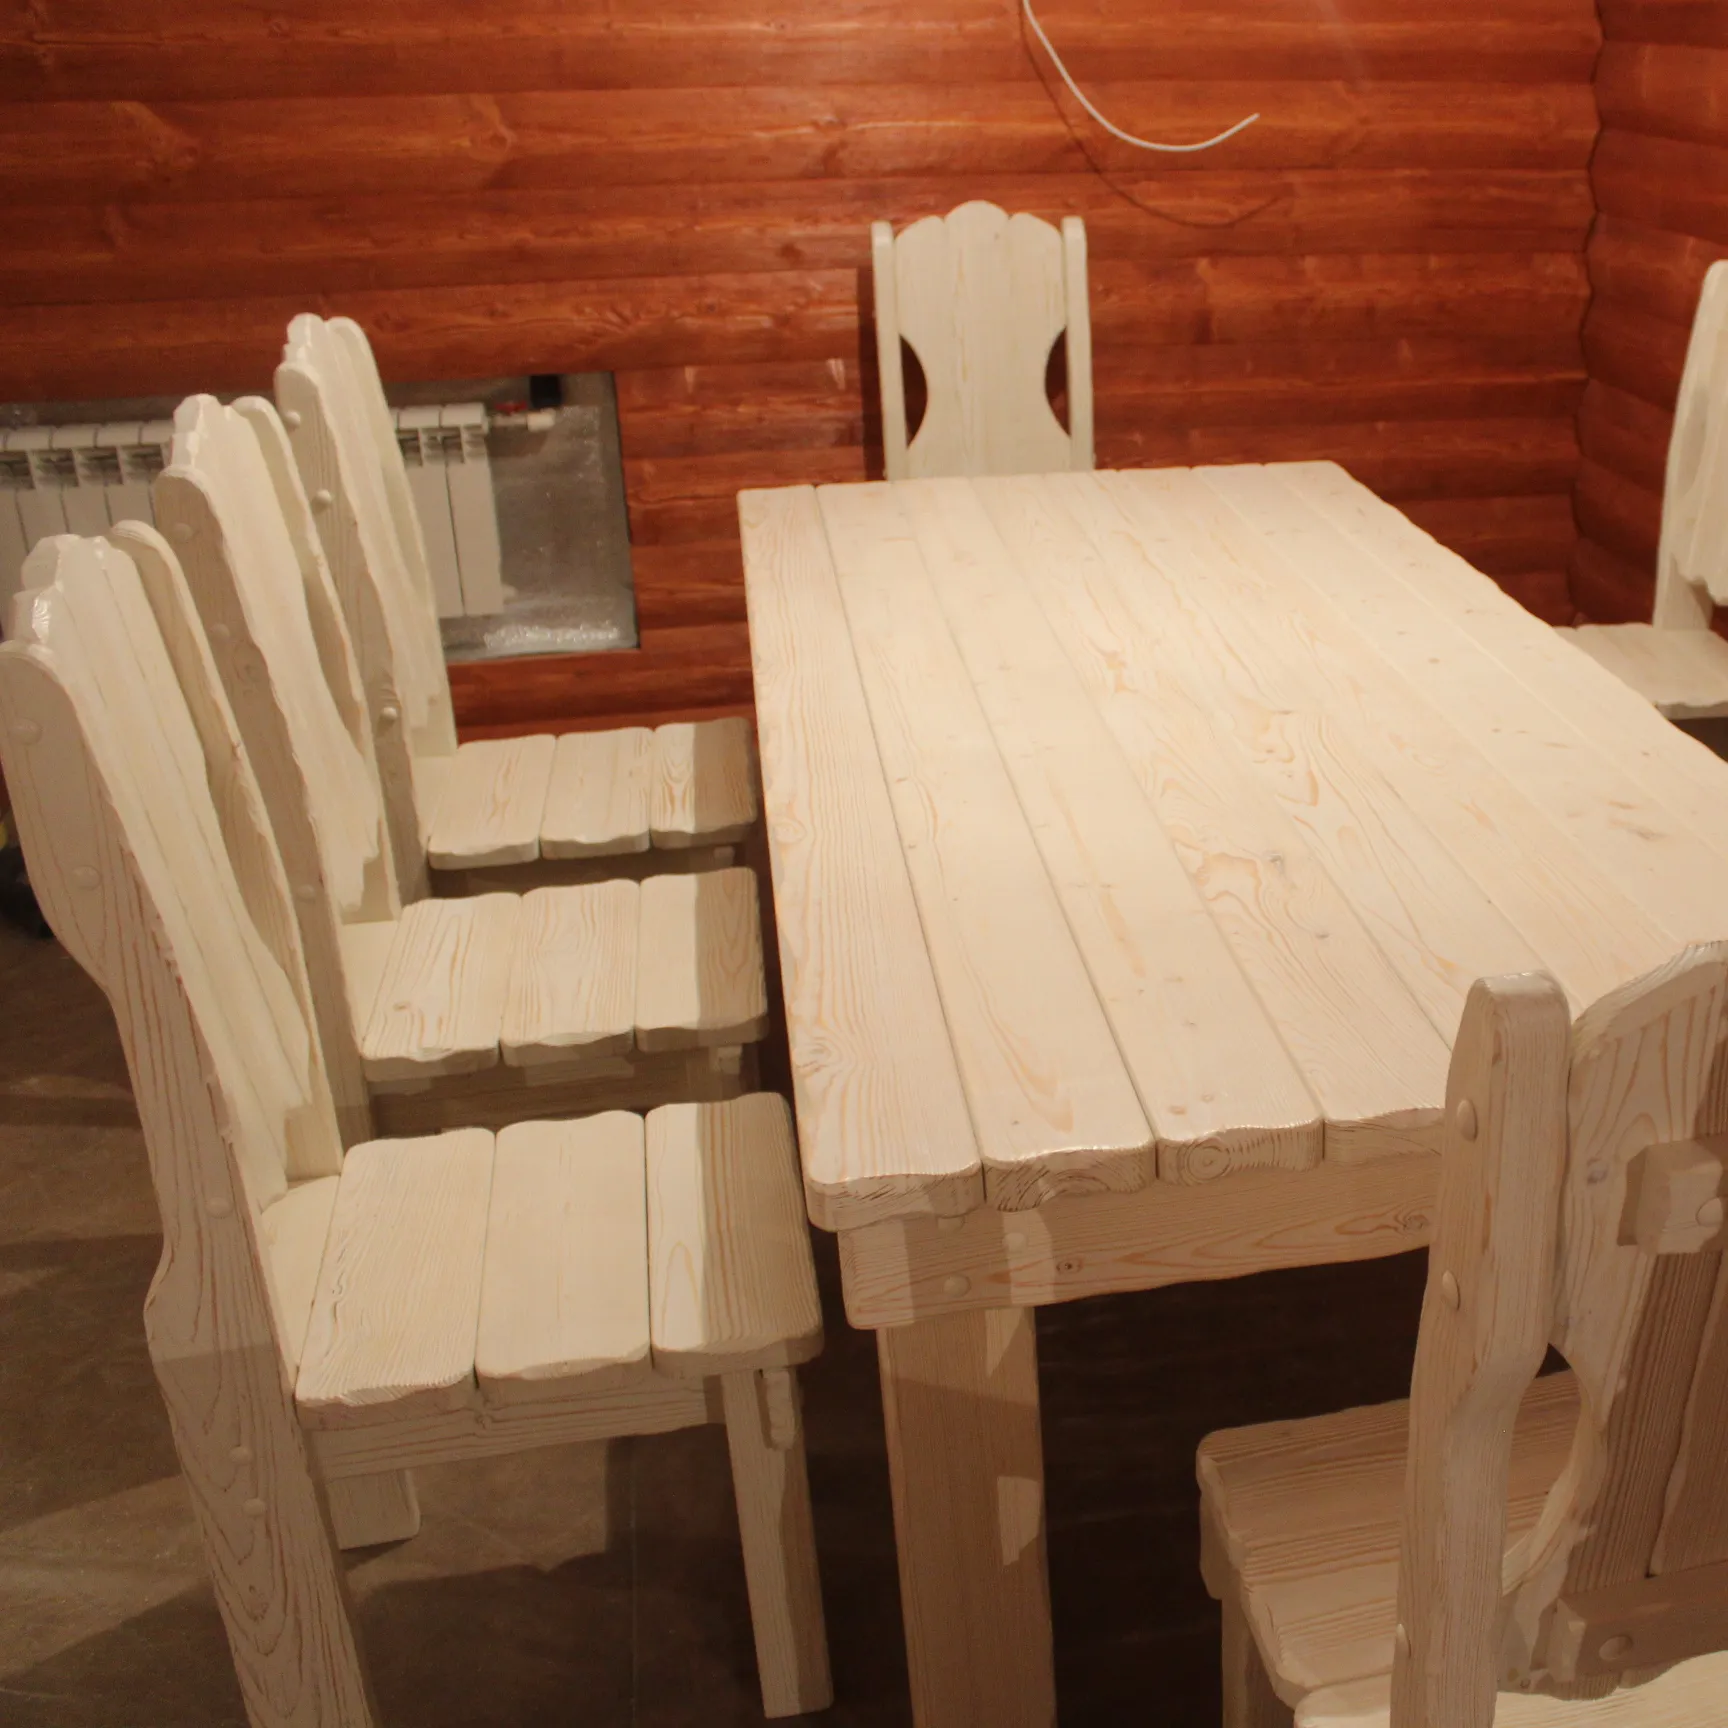 اليدوية خشبية أثاث غرفة الطعام تخصيص تصميم OEM الكرتون والتغليف 1600x800x760 الطبيعي الصلبة البلوط الجدول